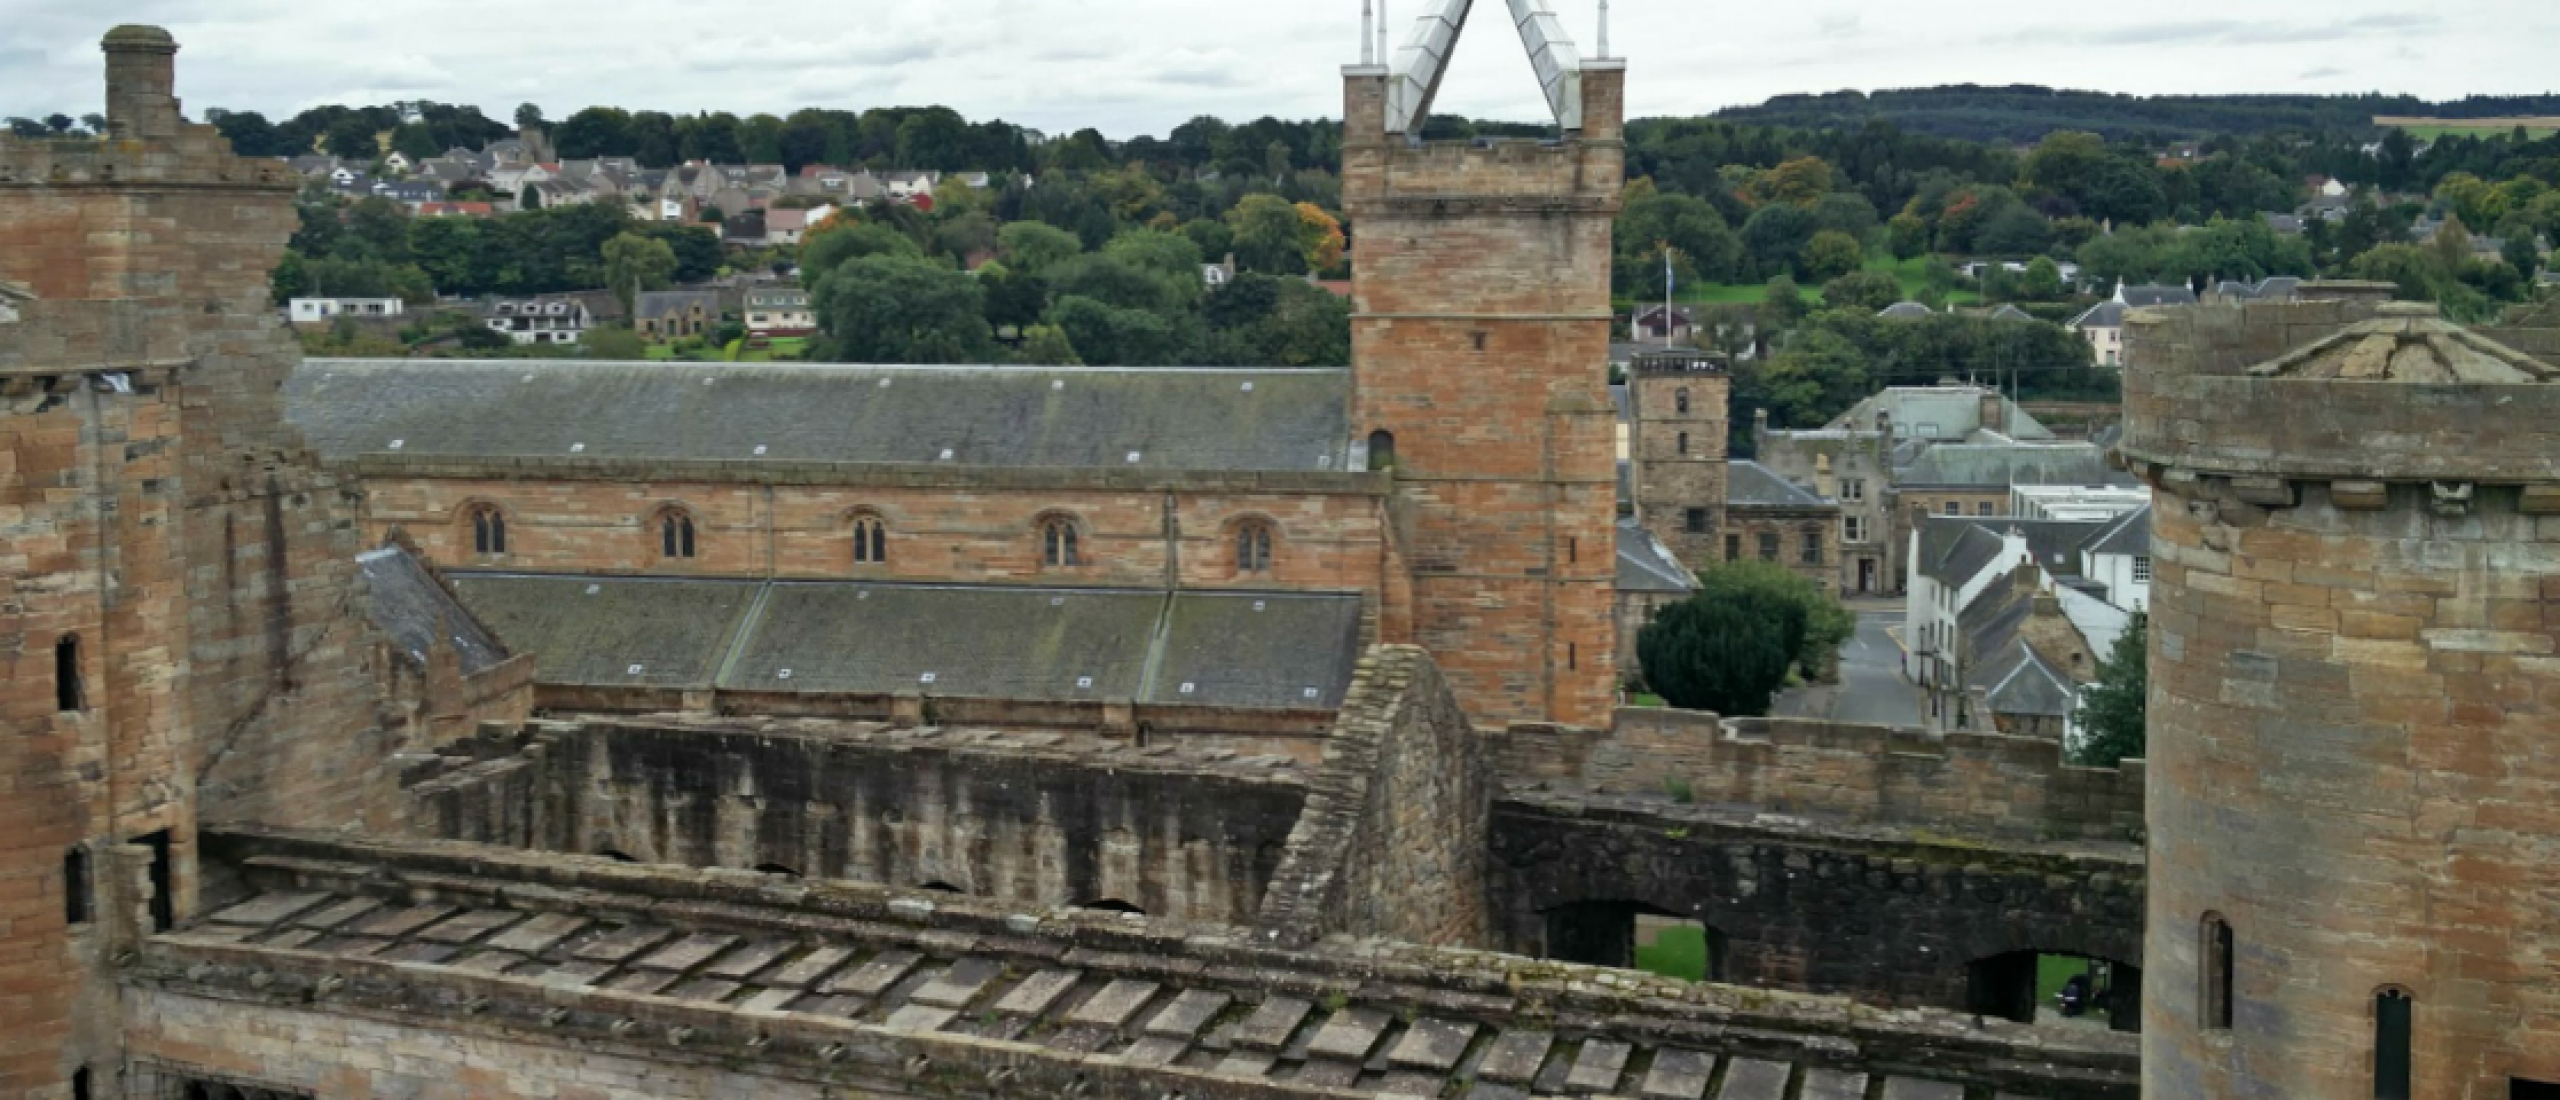 Linlithgow Palace, de geboorteplaats van Mary Queen of Scots